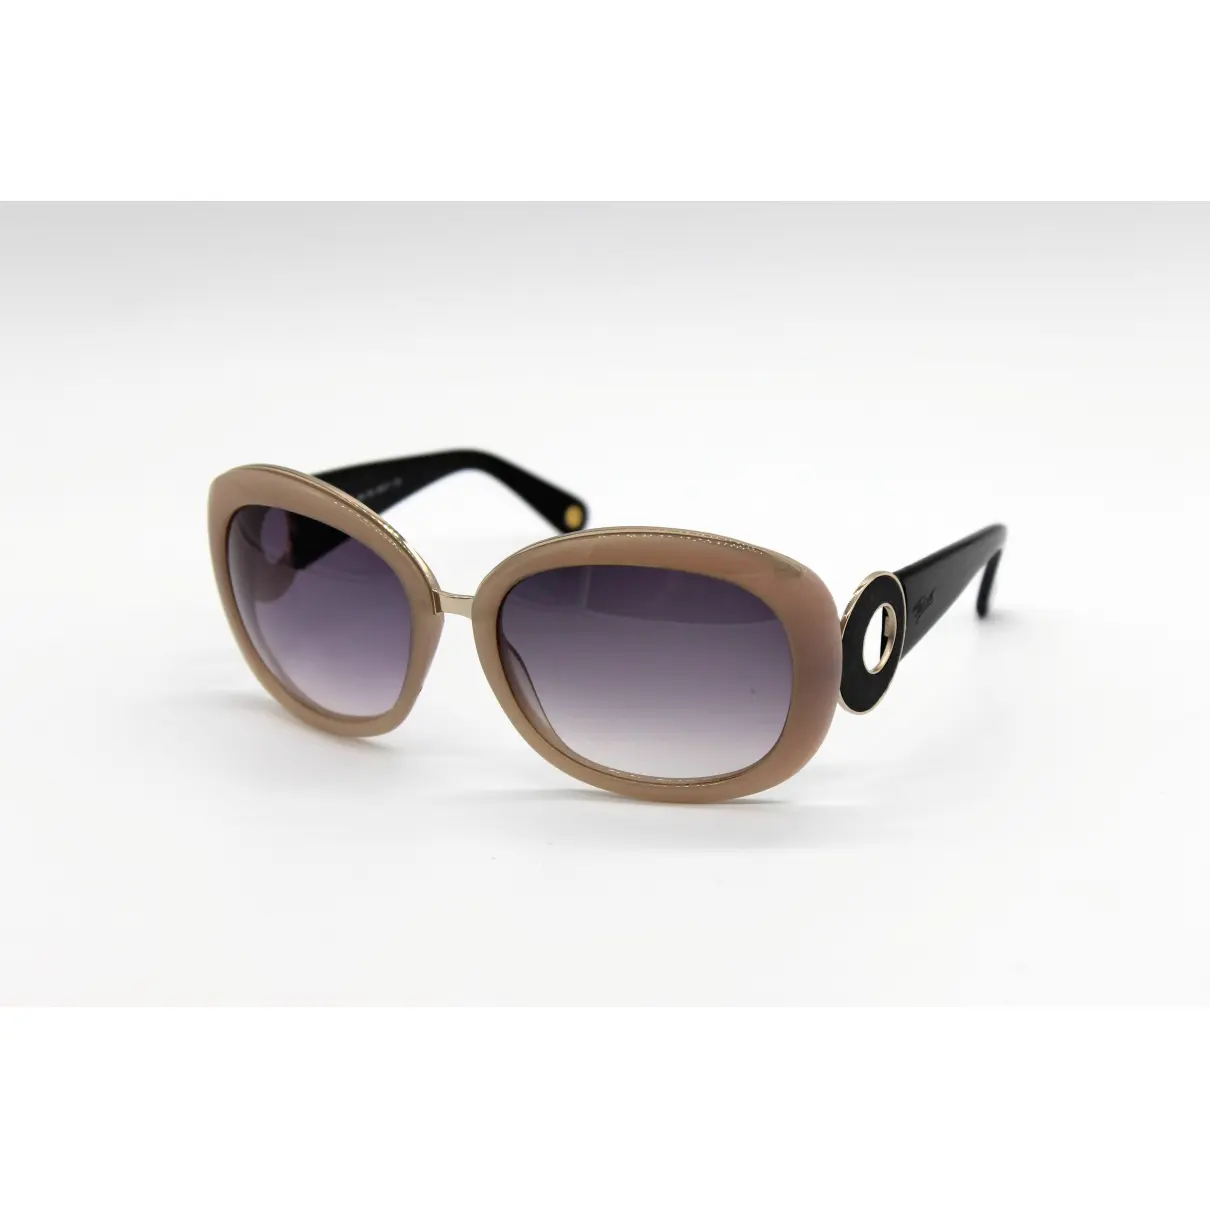 Oversized sunglasses Cesare Paciotti - Vintage